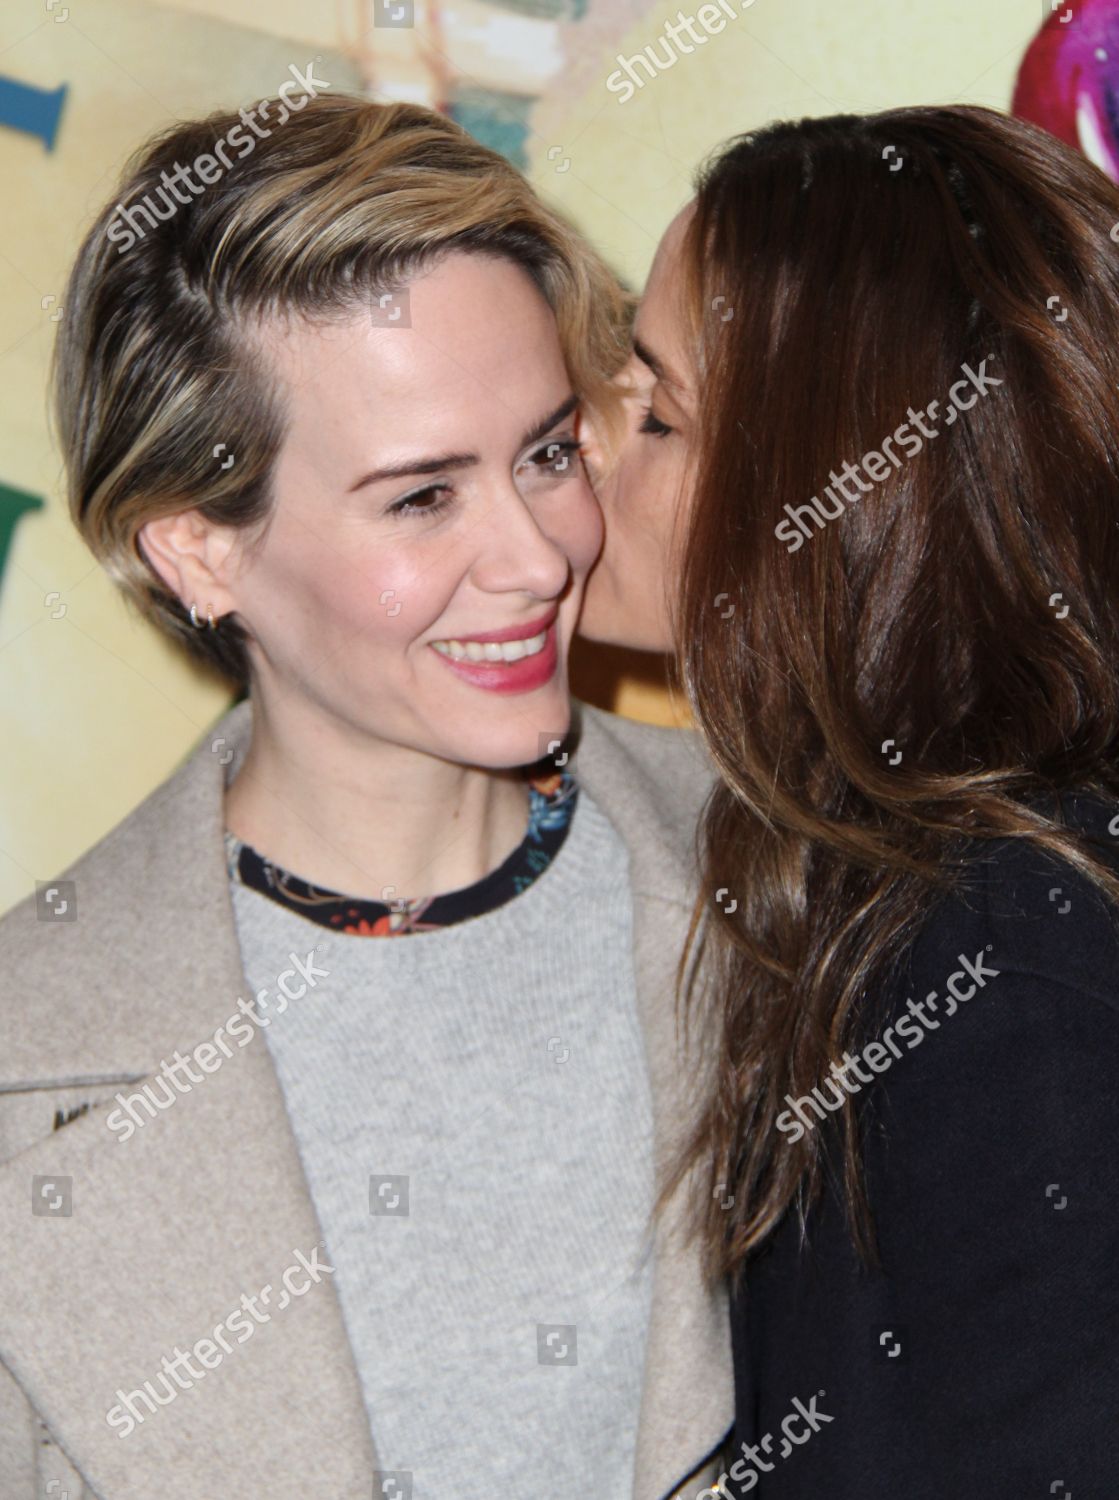 sarah paulson and amanda peet kiss